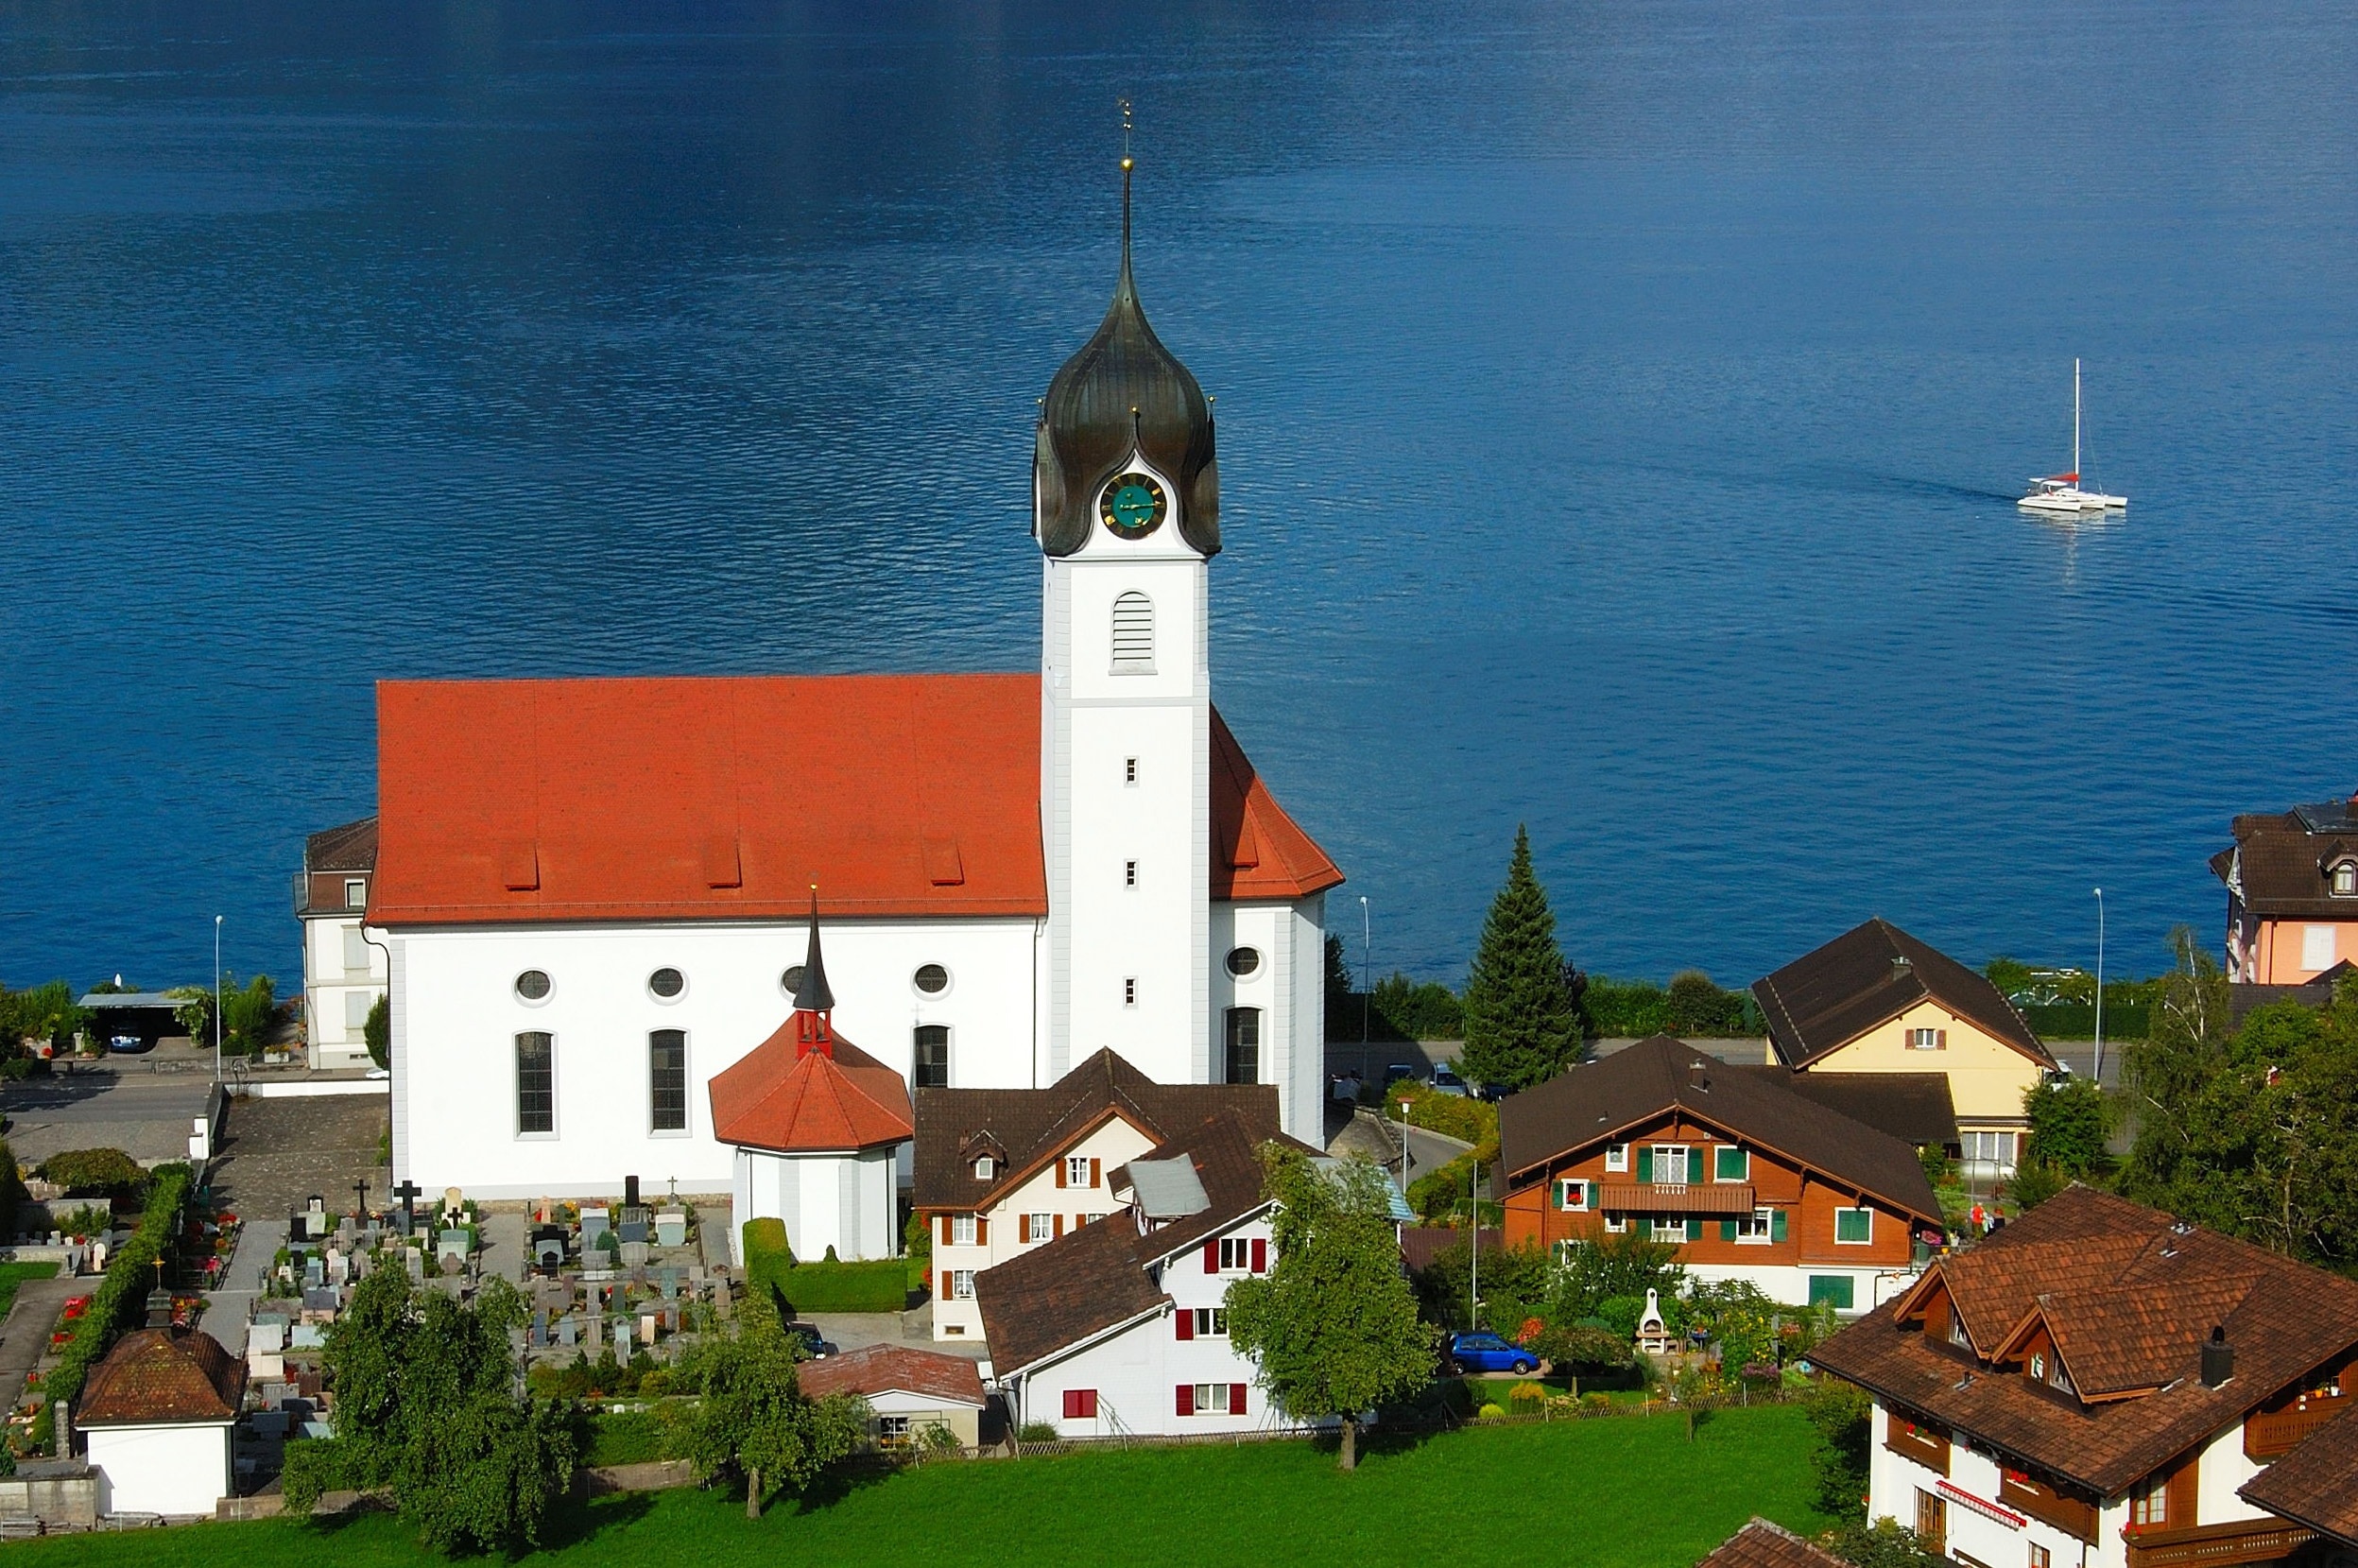 Switzerland, Lake Lucerne Region, Church, building exterior, architecture